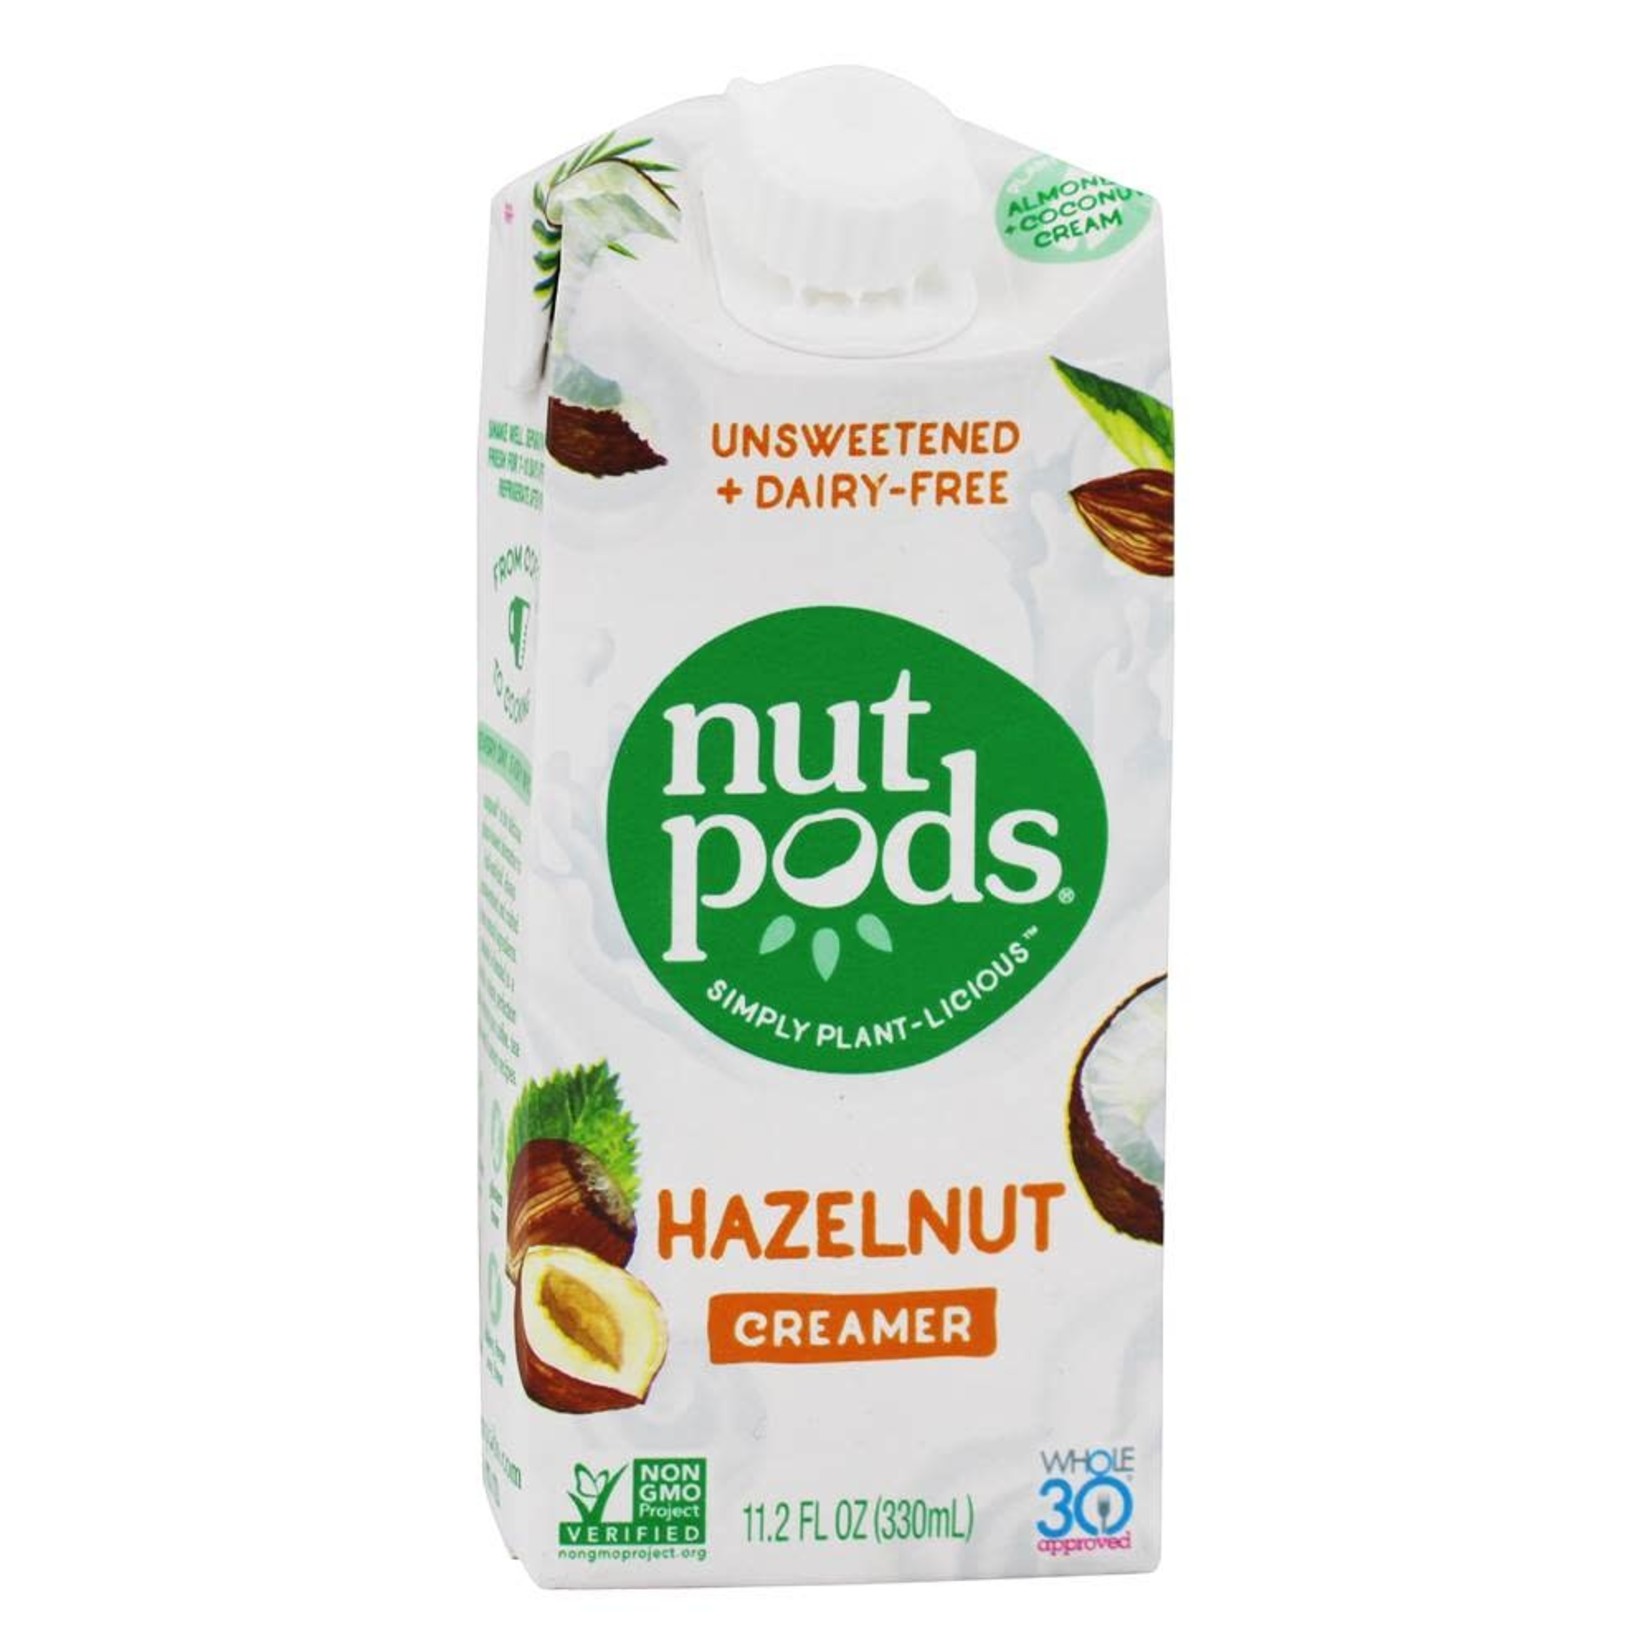 Nutpods Nut Pods Hazelnut